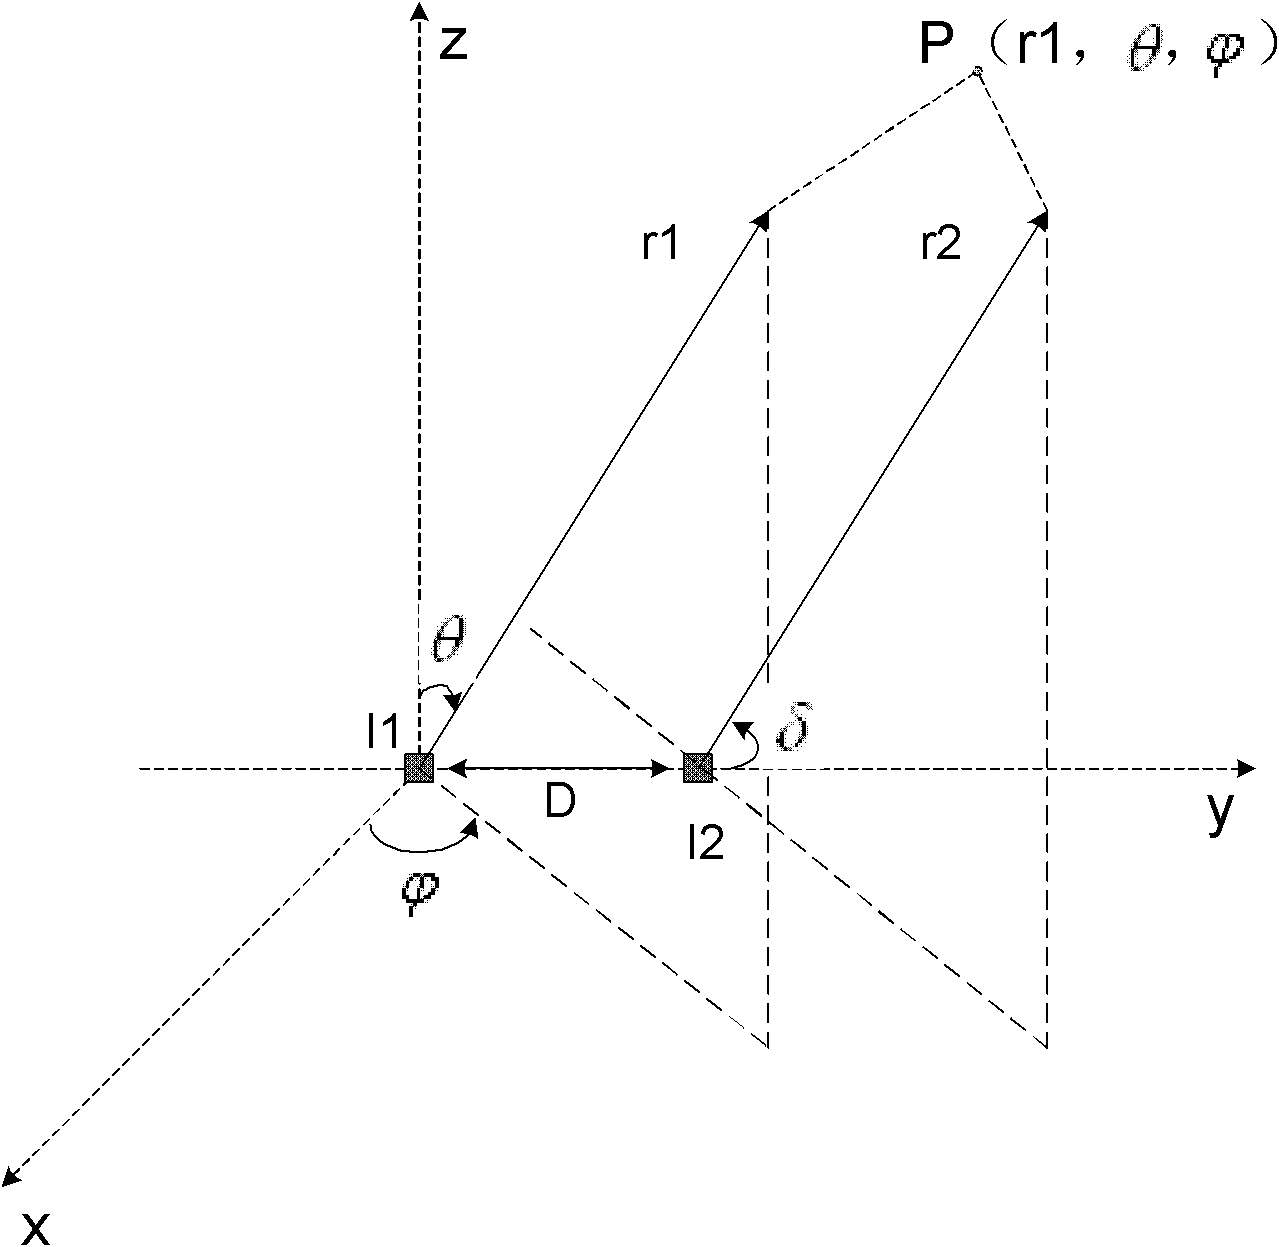 Antenna and antenna arranging method